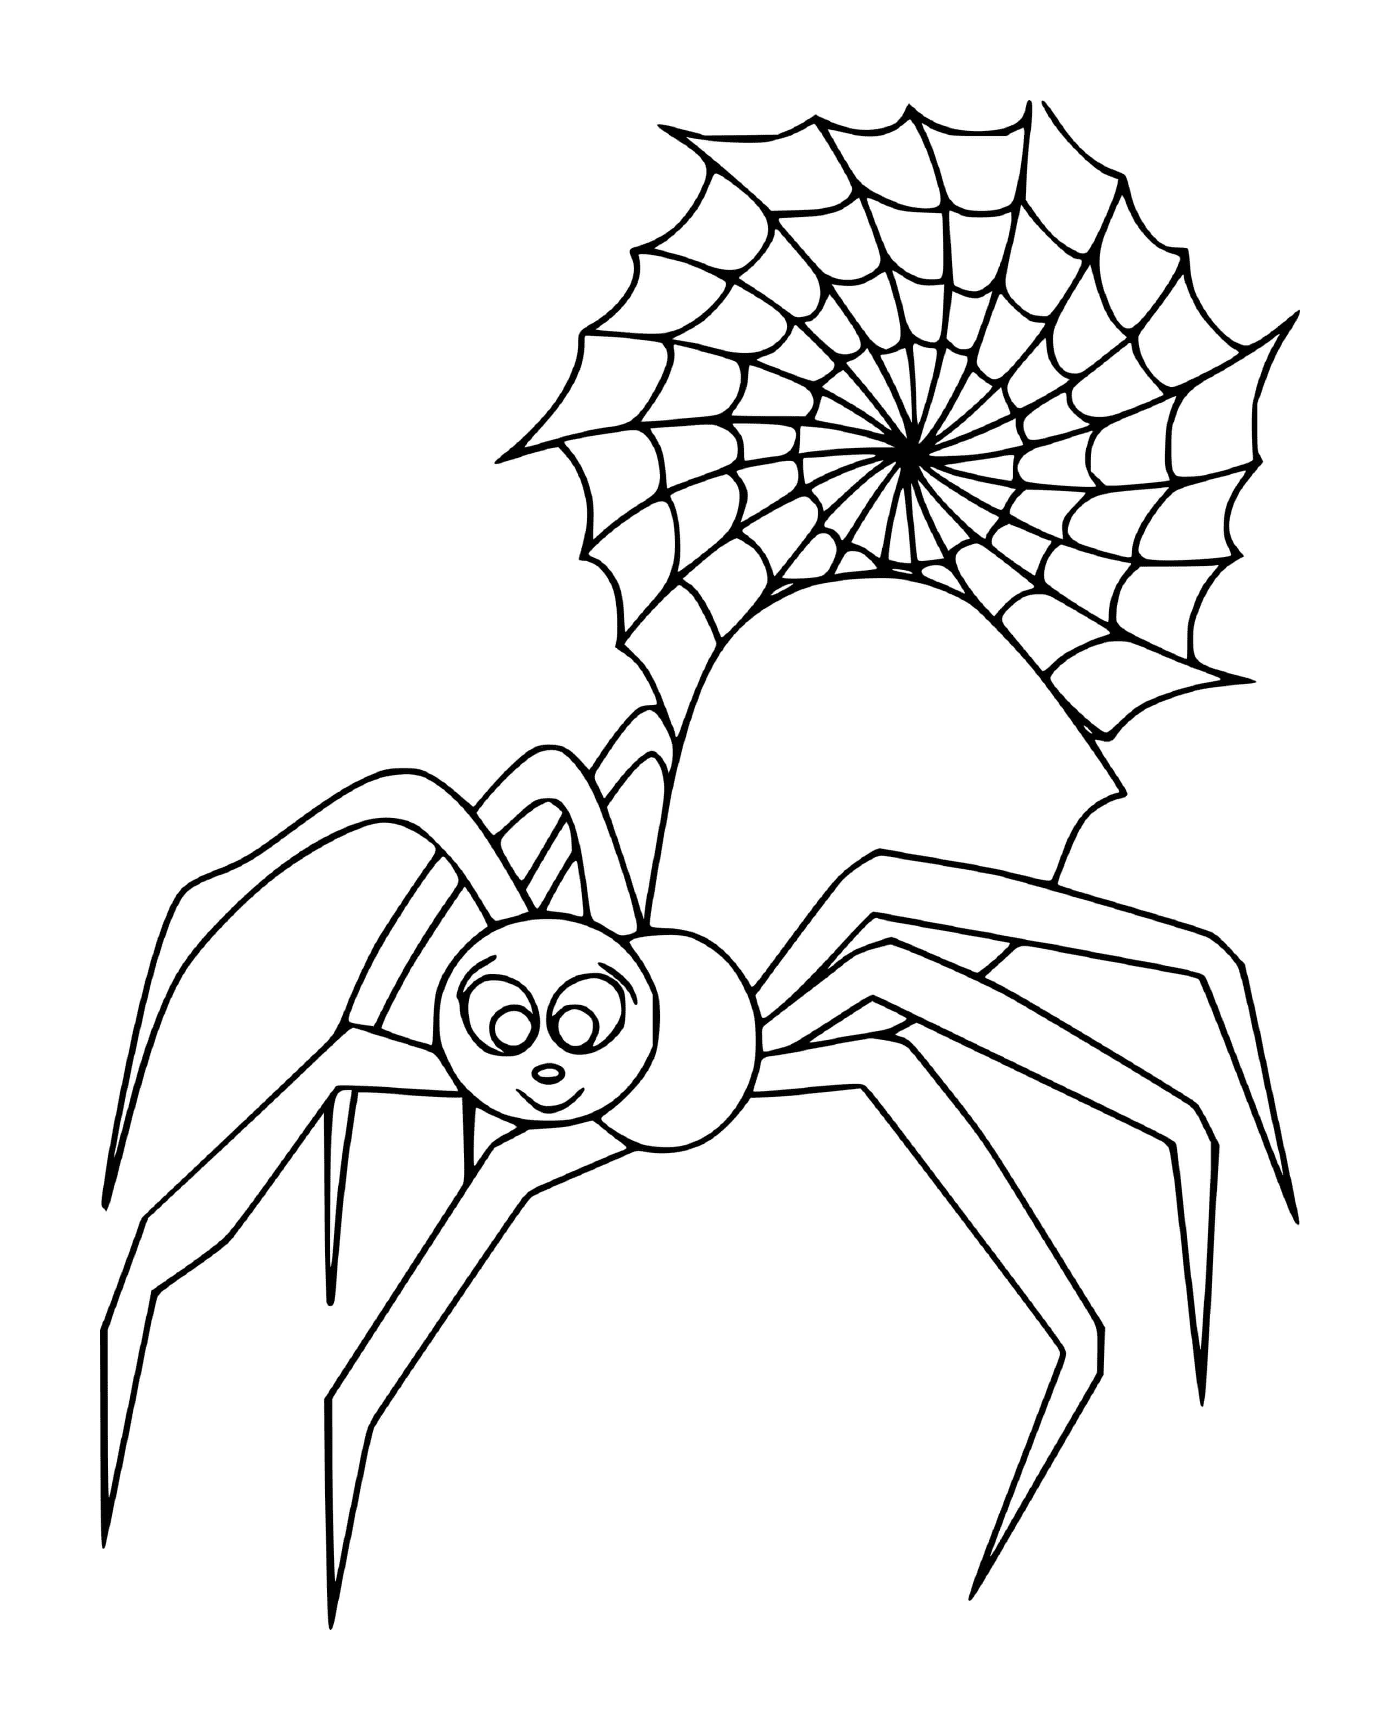  Un ragno gigante e carino 